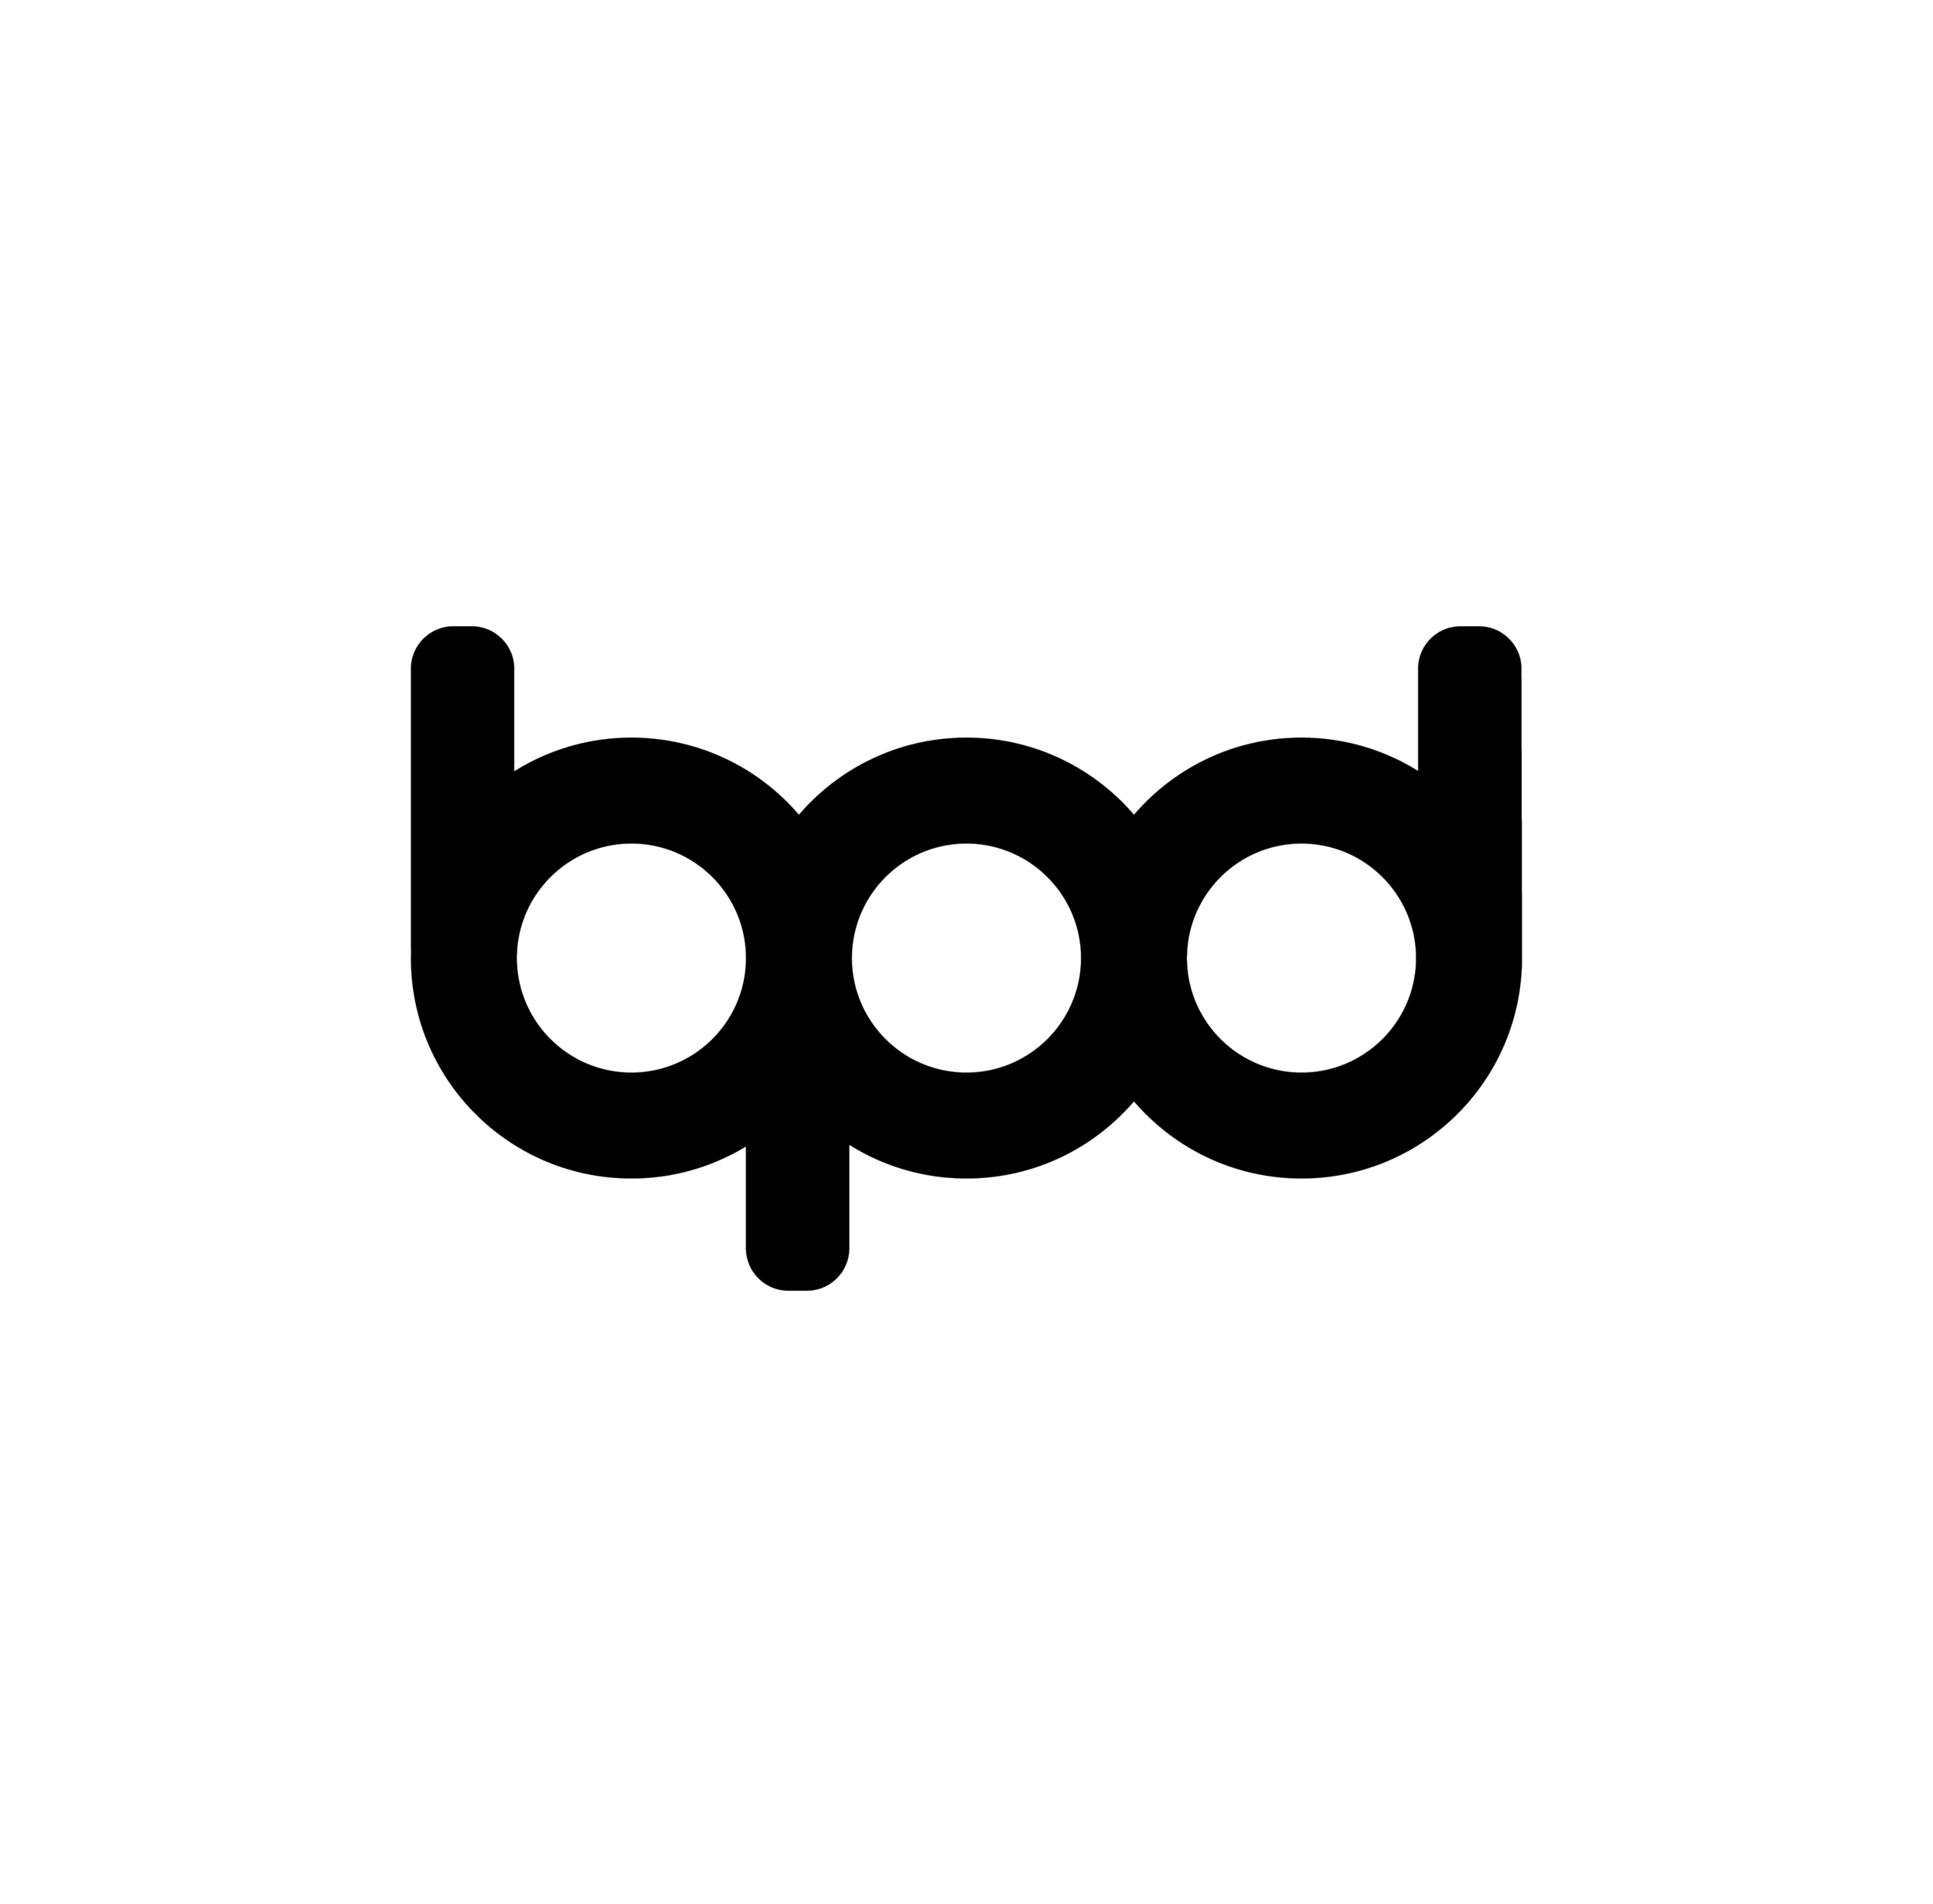 bpd_logo_ig copy.png